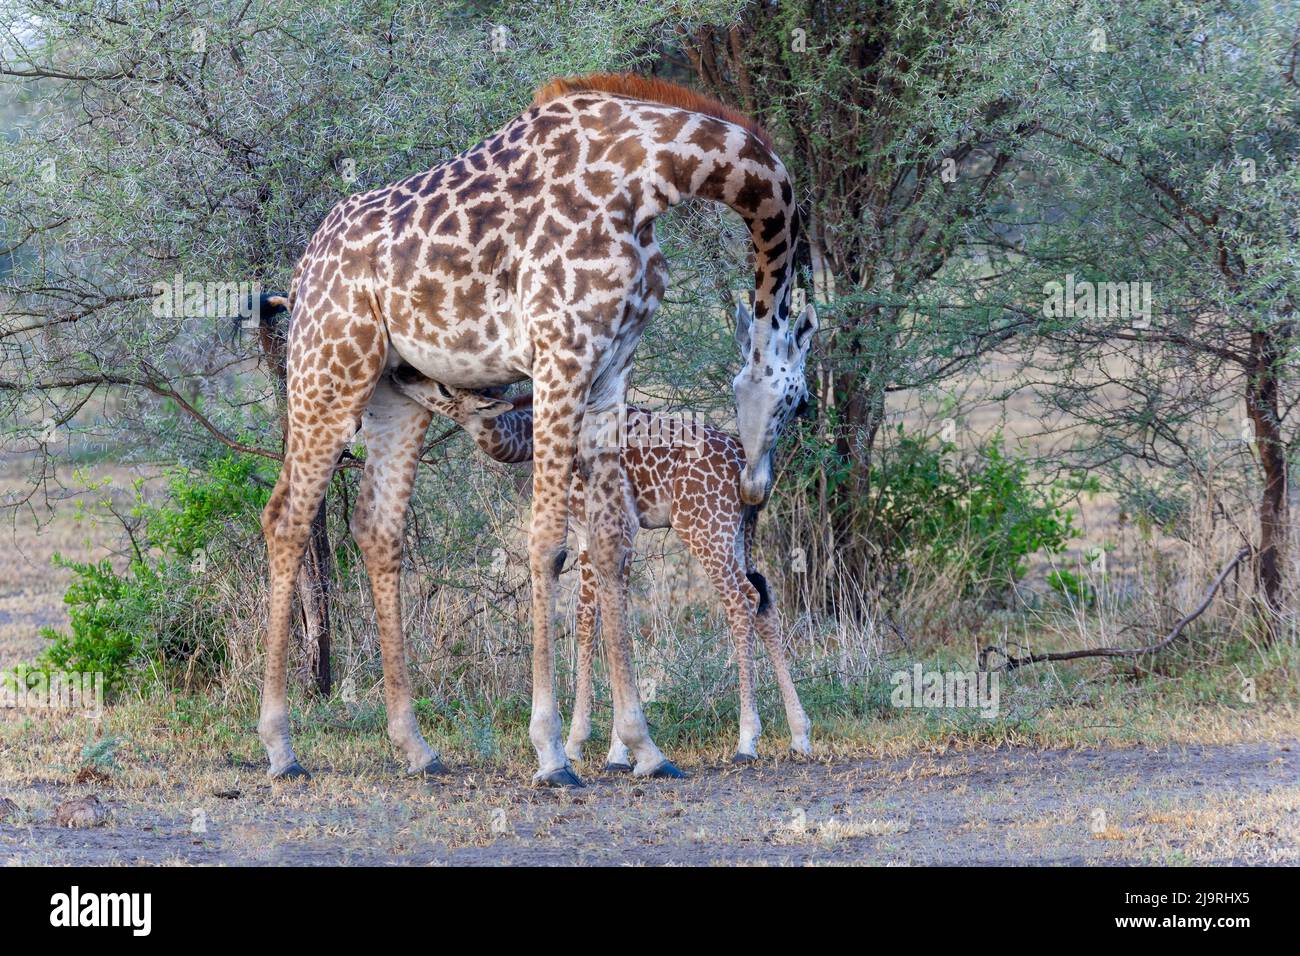 Africa, Tanzania. A young giraffe suckles. Stock Photo